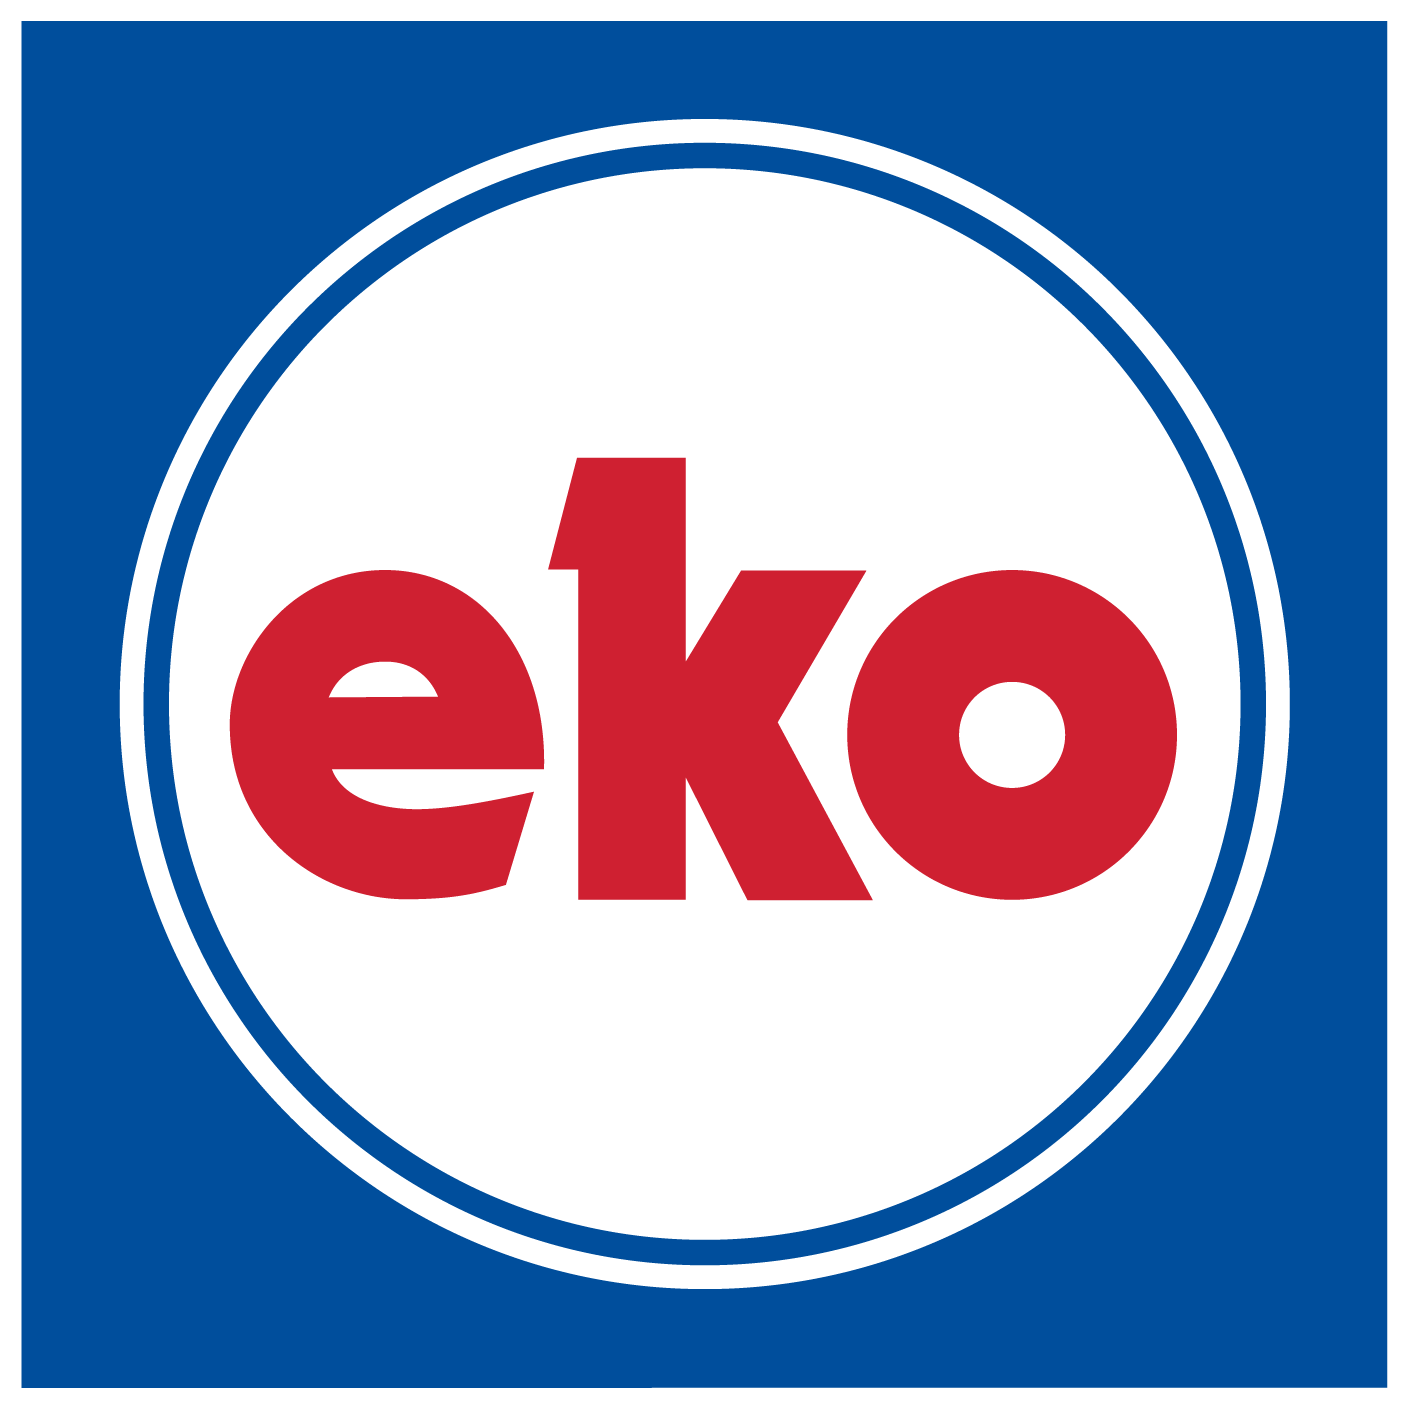 eko corporate logo